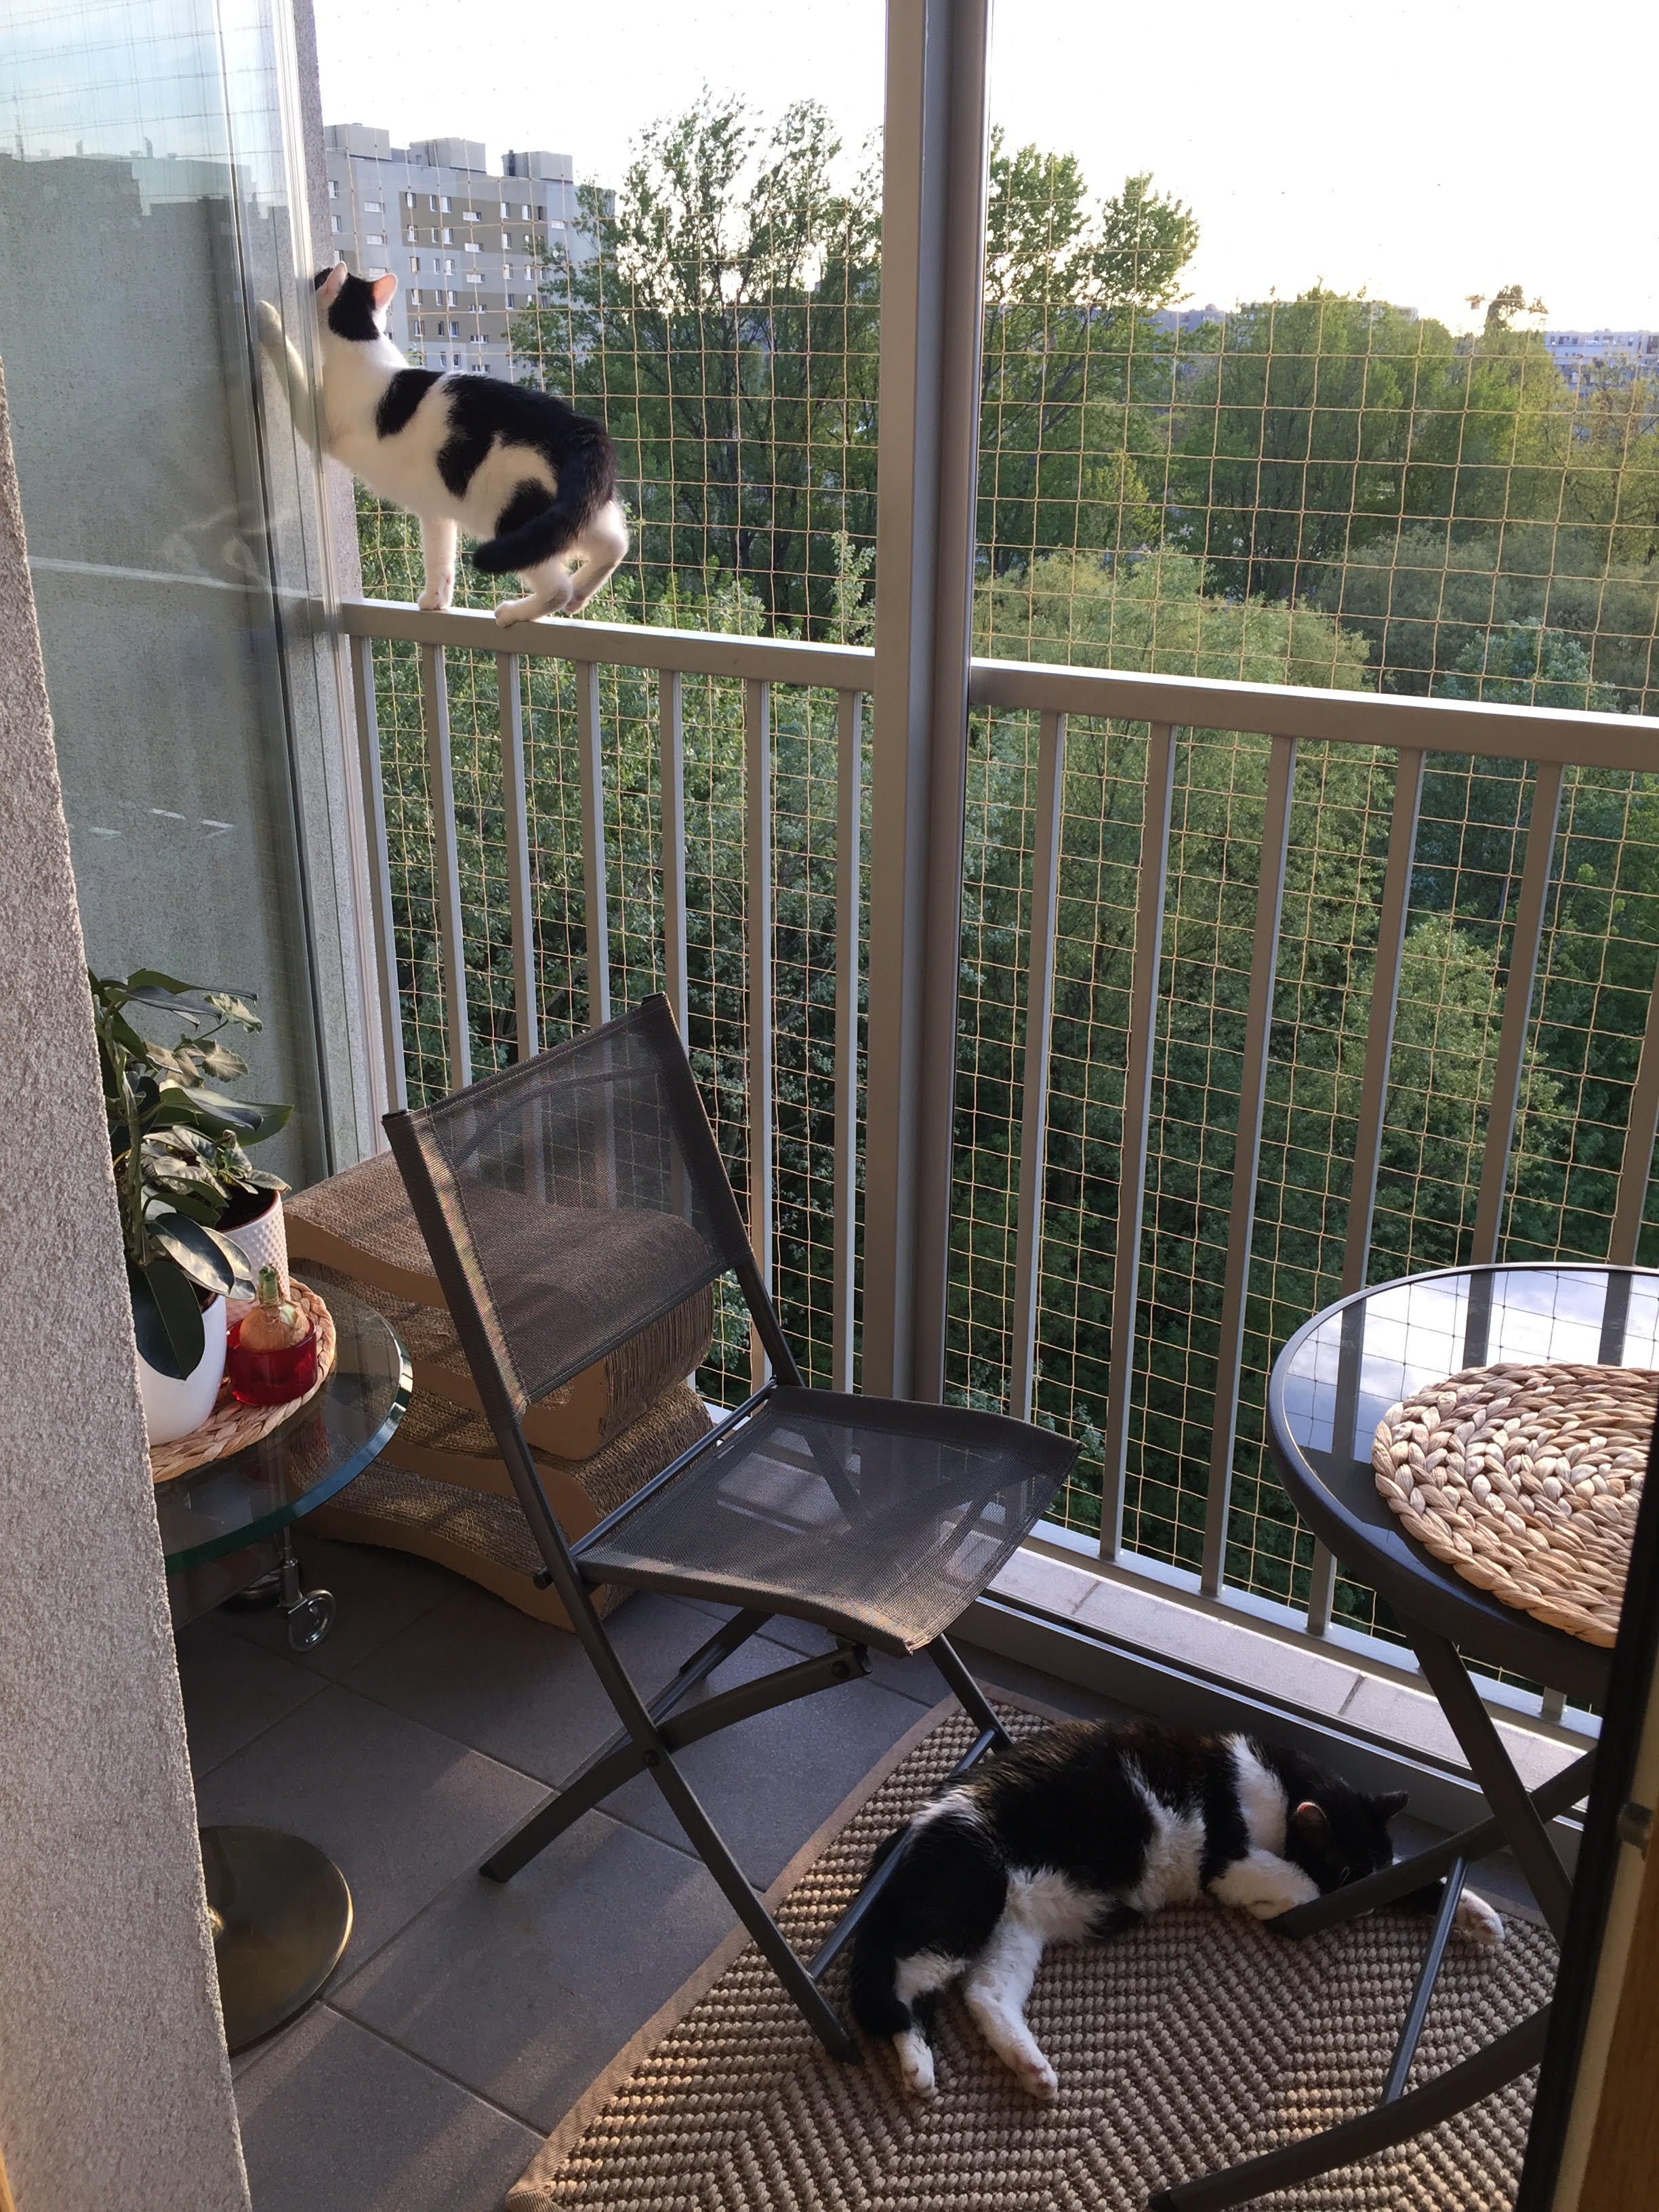 Zestaw 5x2m bez wiercenia z siatka na balkon dla kota. Kocia siatka balkonowa oczko 50x50mm.